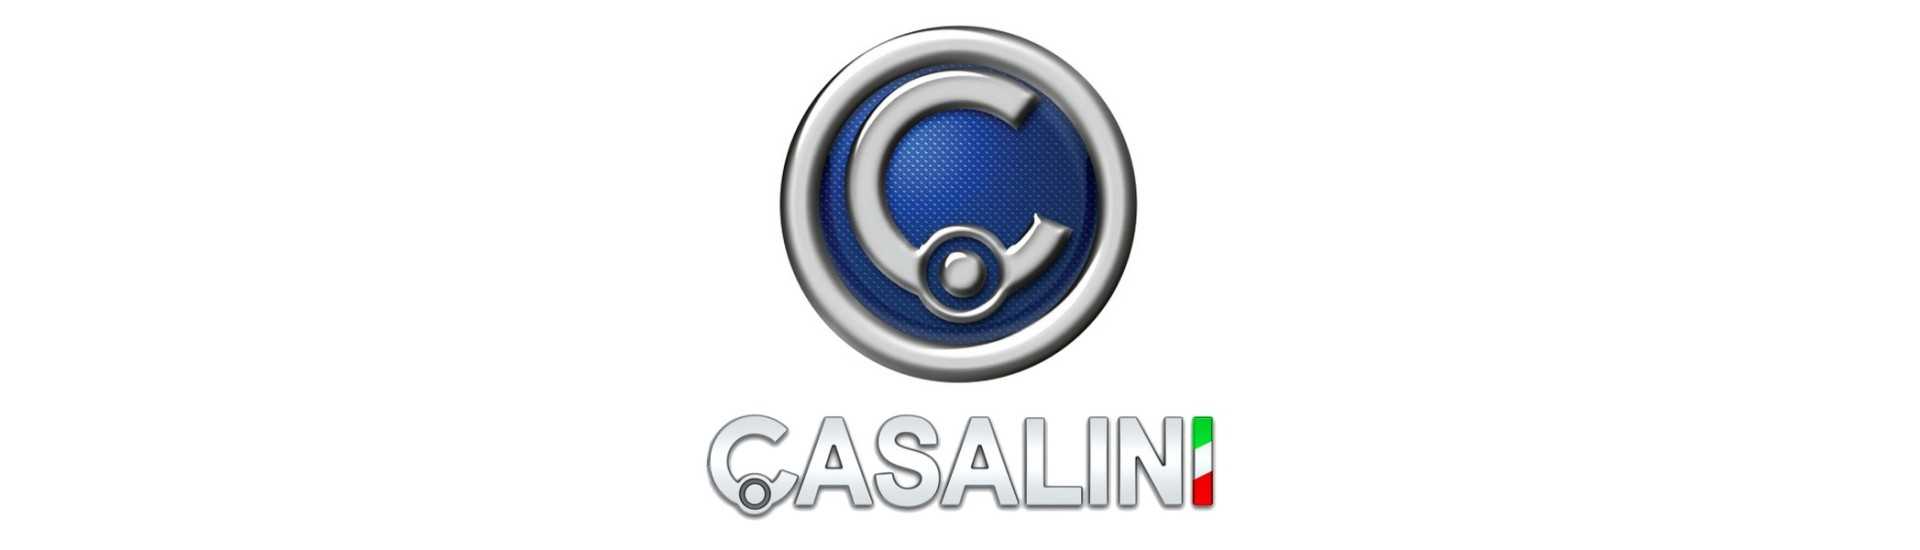 La mejor rueda de repuesto para coche sin carnet Casalini